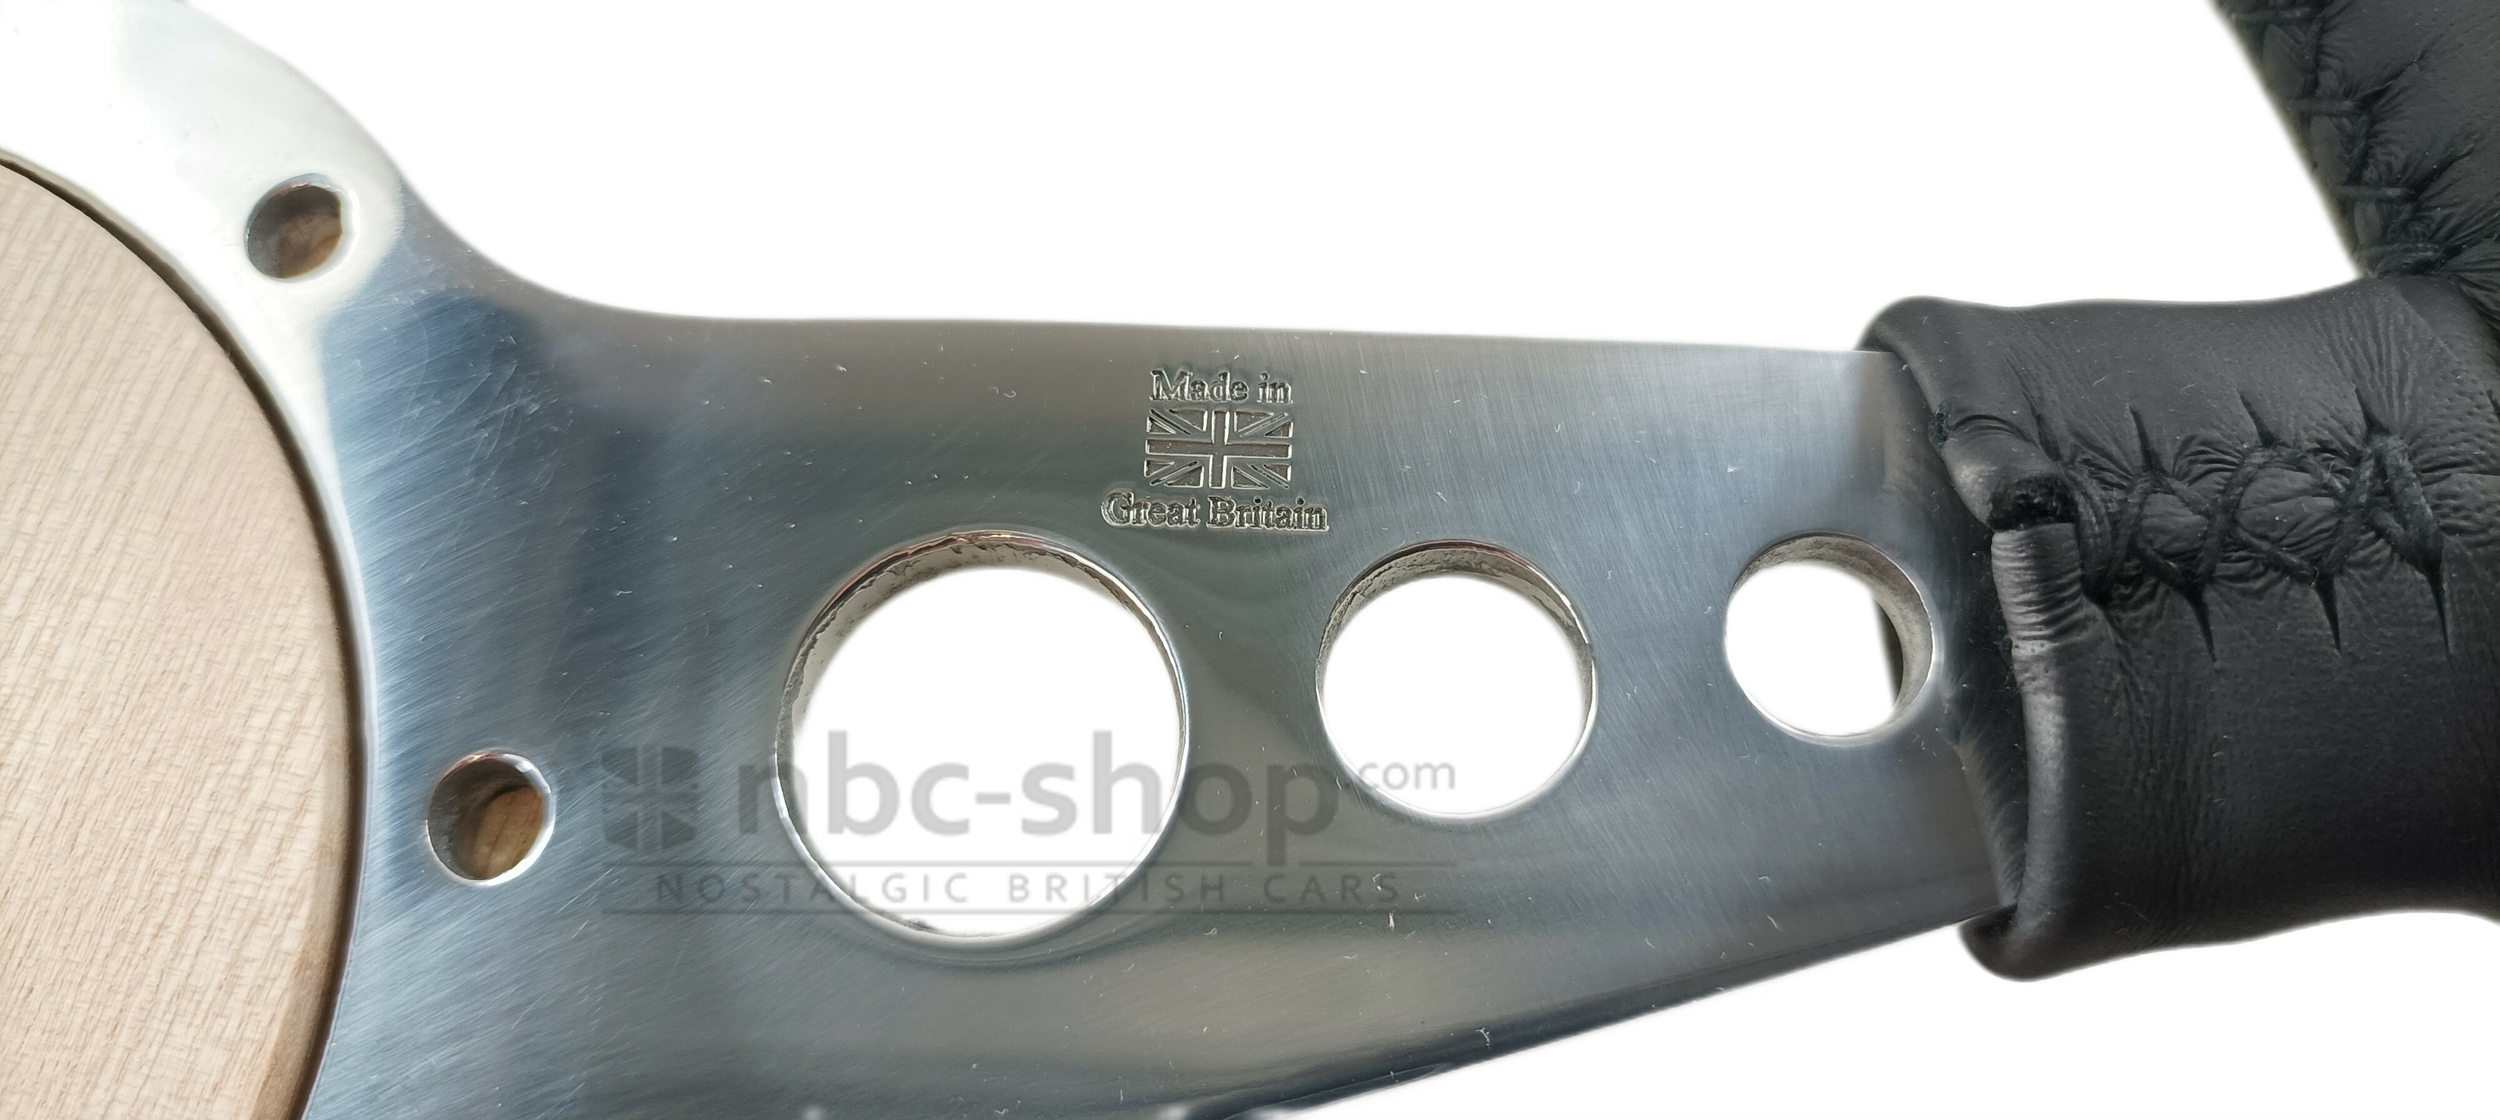 mlw1111-14 volant motolita 14 pouces cuir branches plates chrome nbc-shop 5